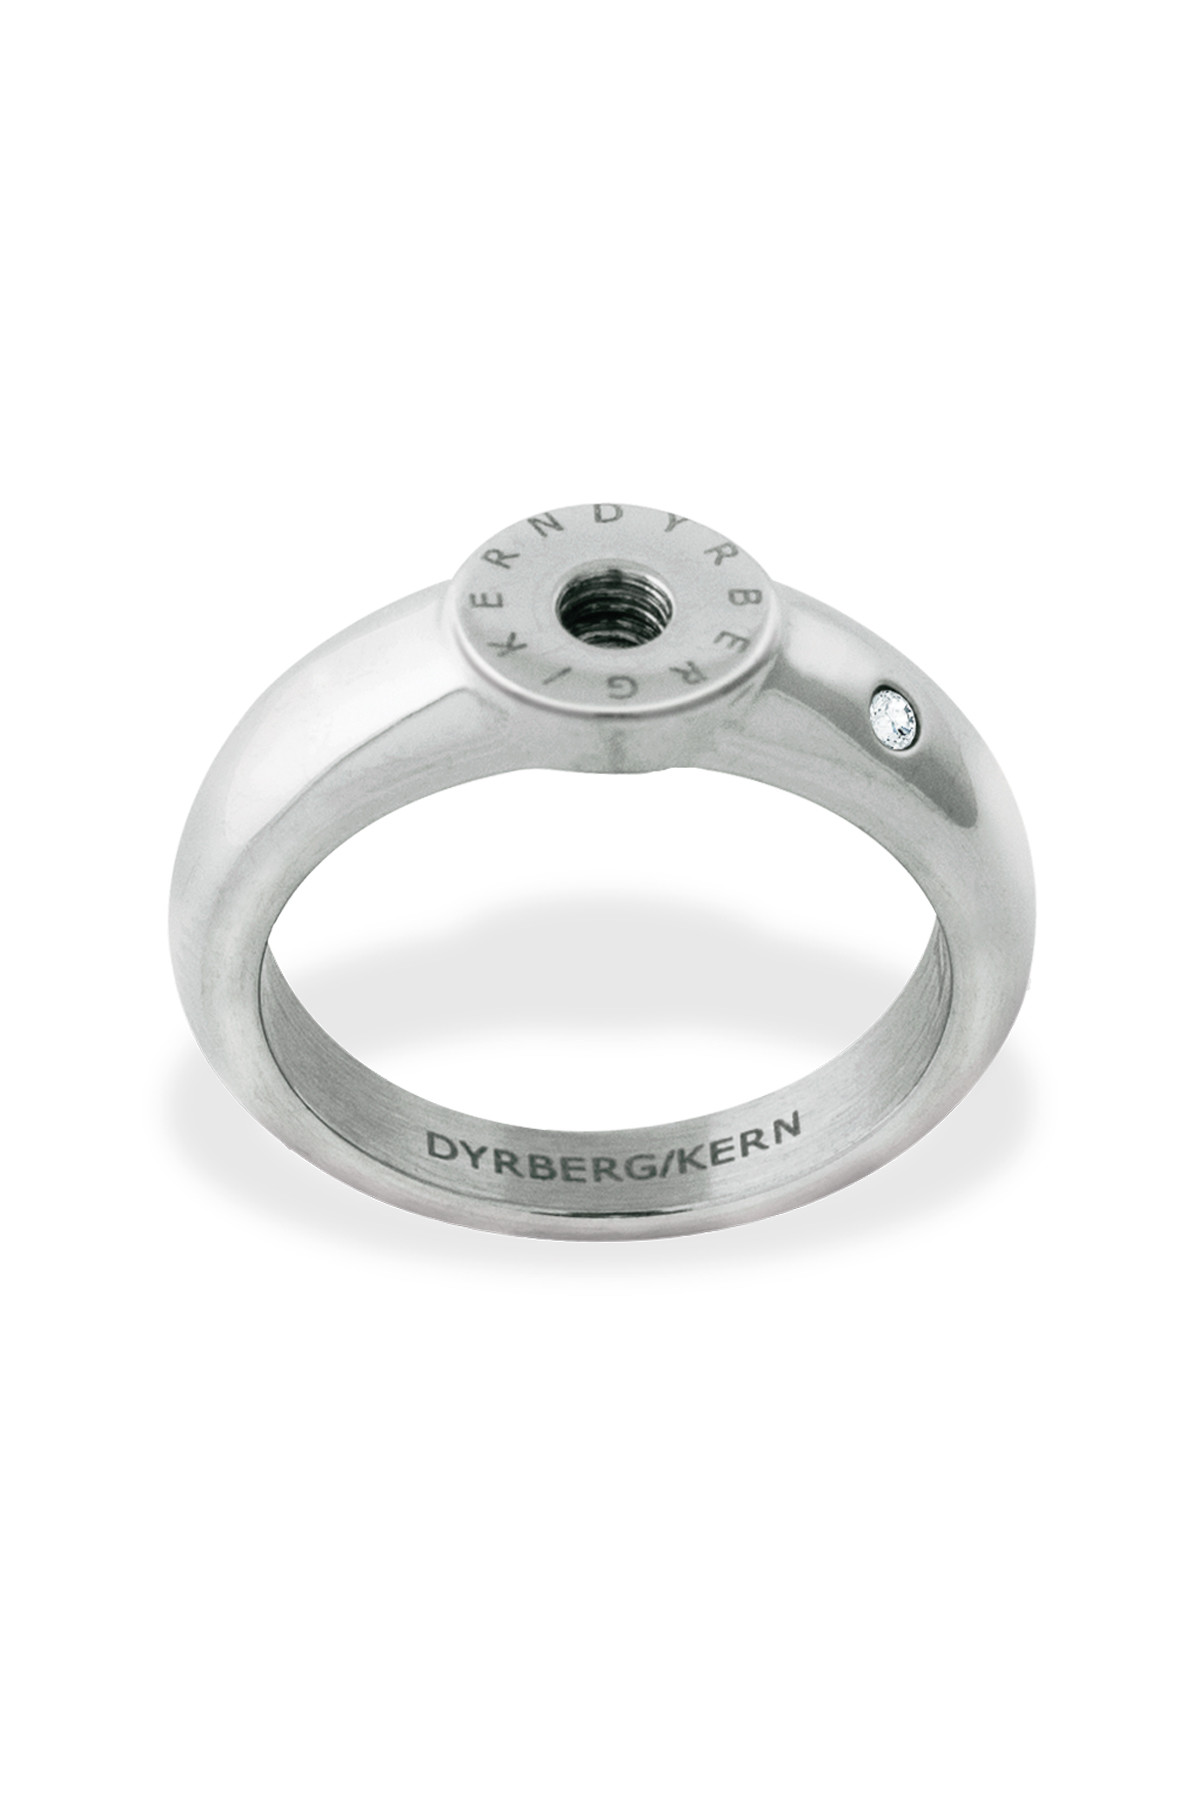 Se Dyrberg/Kern Ring Ring, Farve: Sølv, Størrelse: III/57, Dame hos Dyrberg/Kern